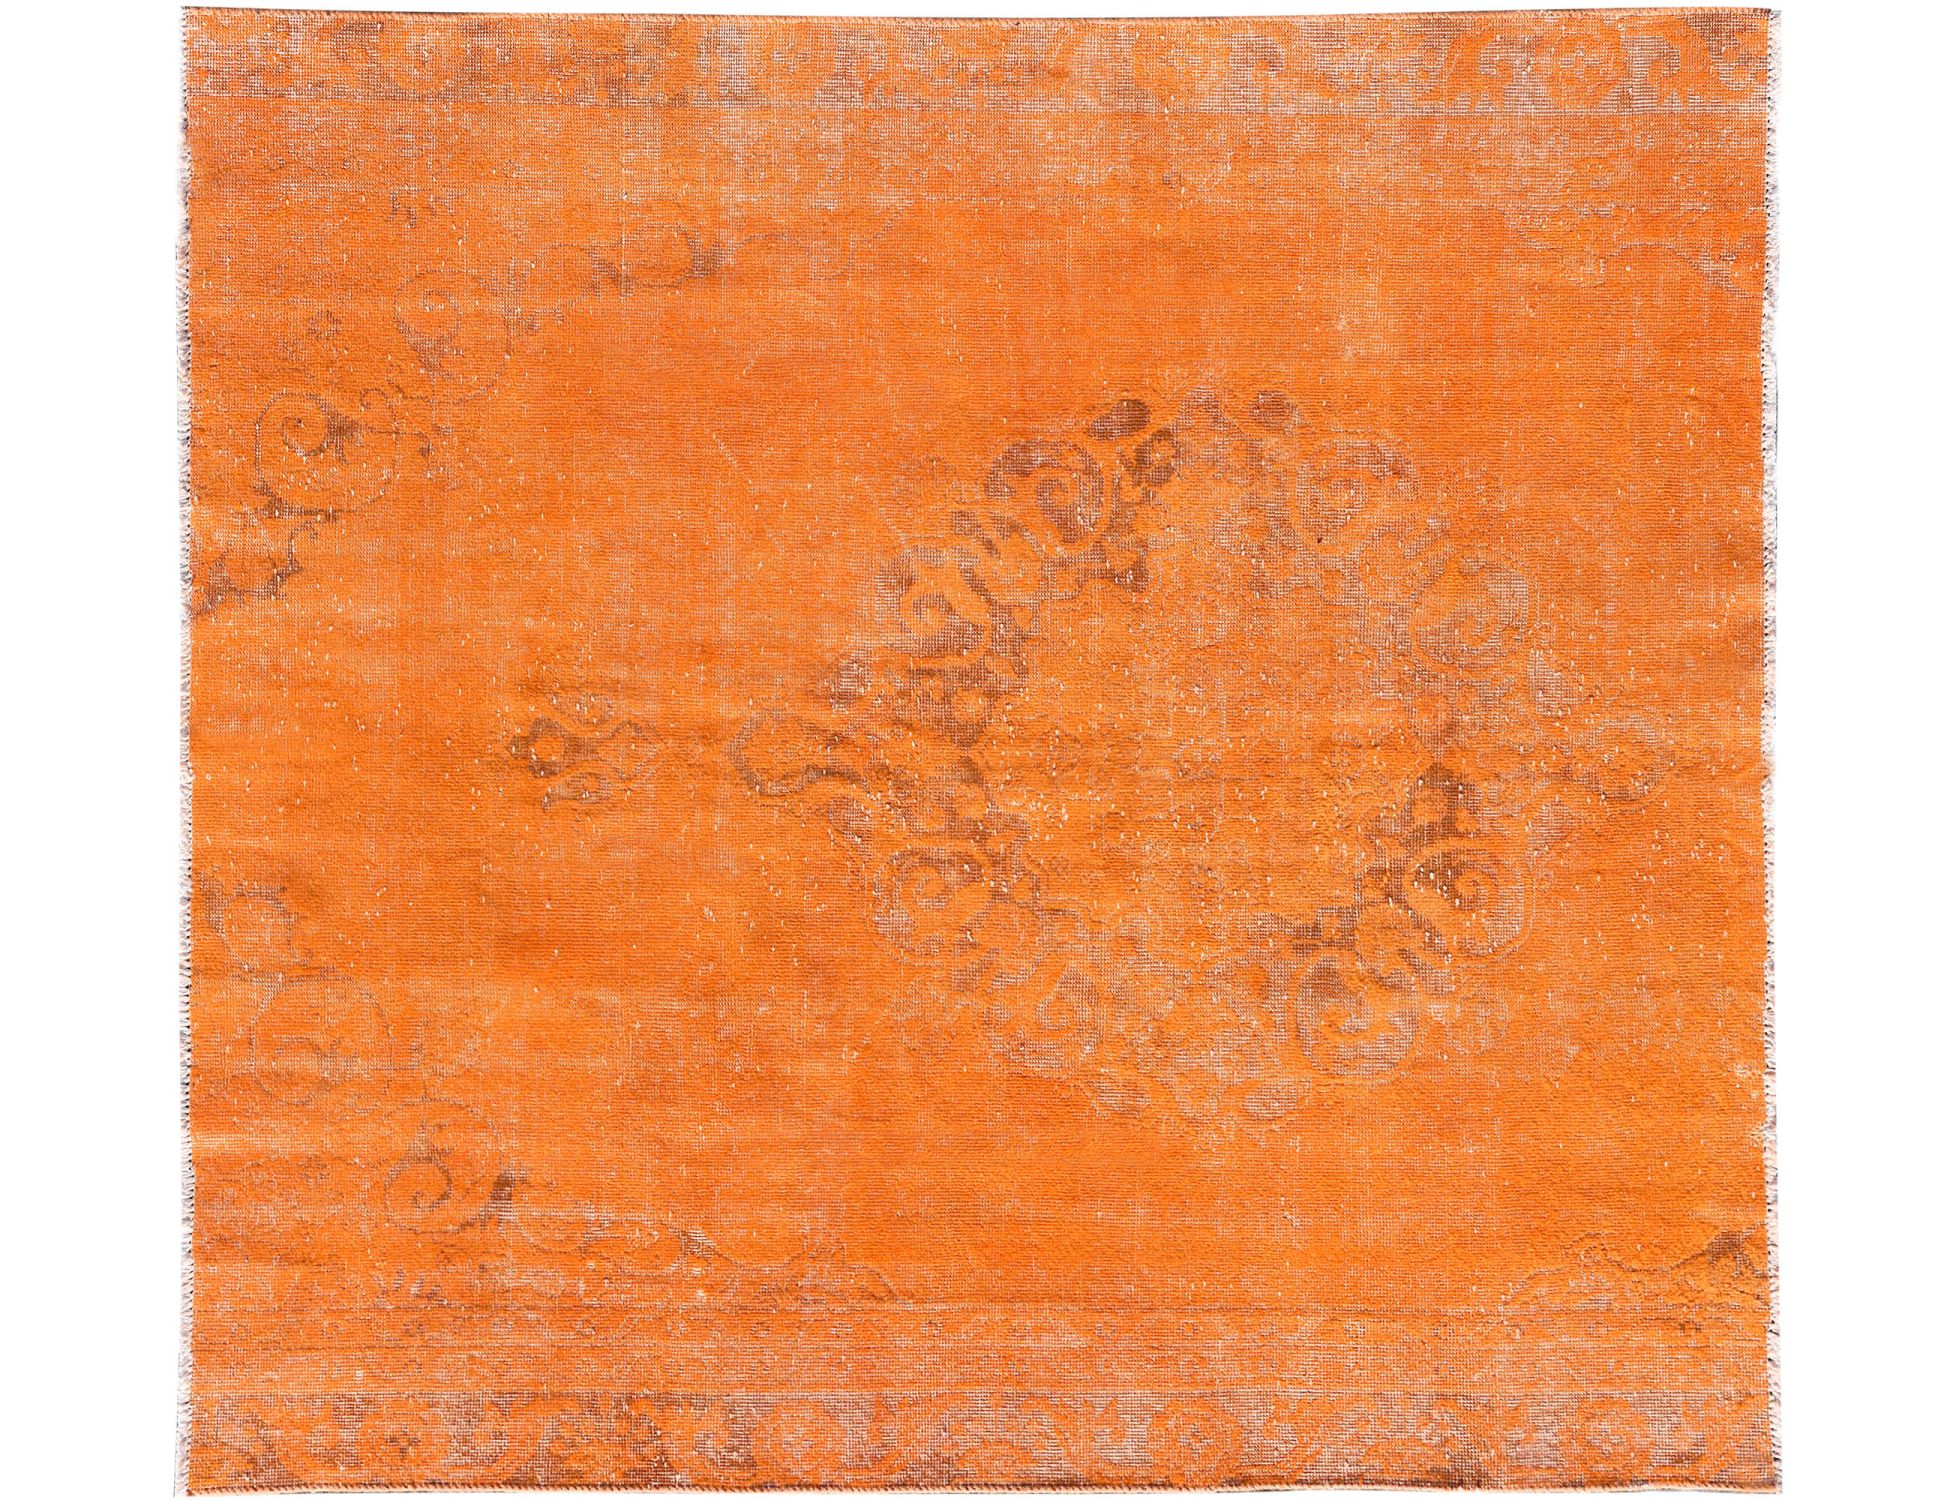 Vintage    Πορτοκαλί <br/>198 x 188 cm